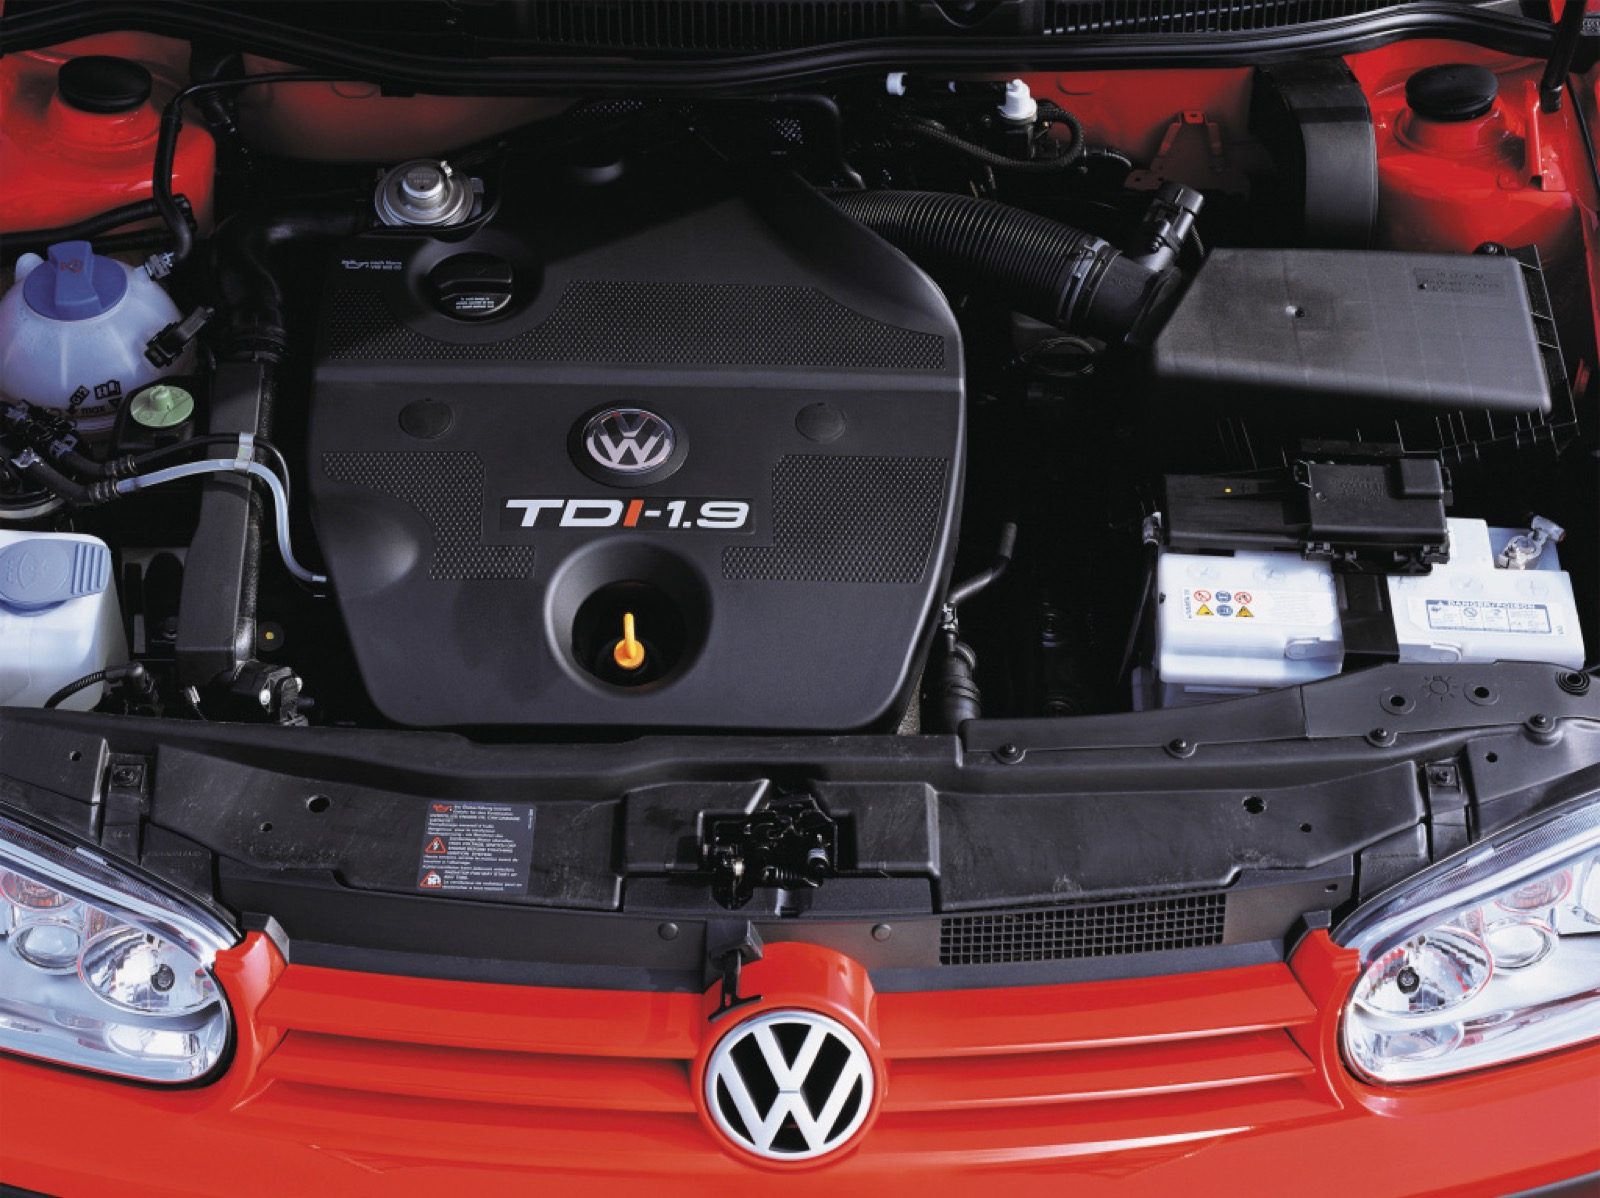 erger maken Of rand 10 redenen waarom de Volkswagen Golf 4 briljant is - Autoblog.nl